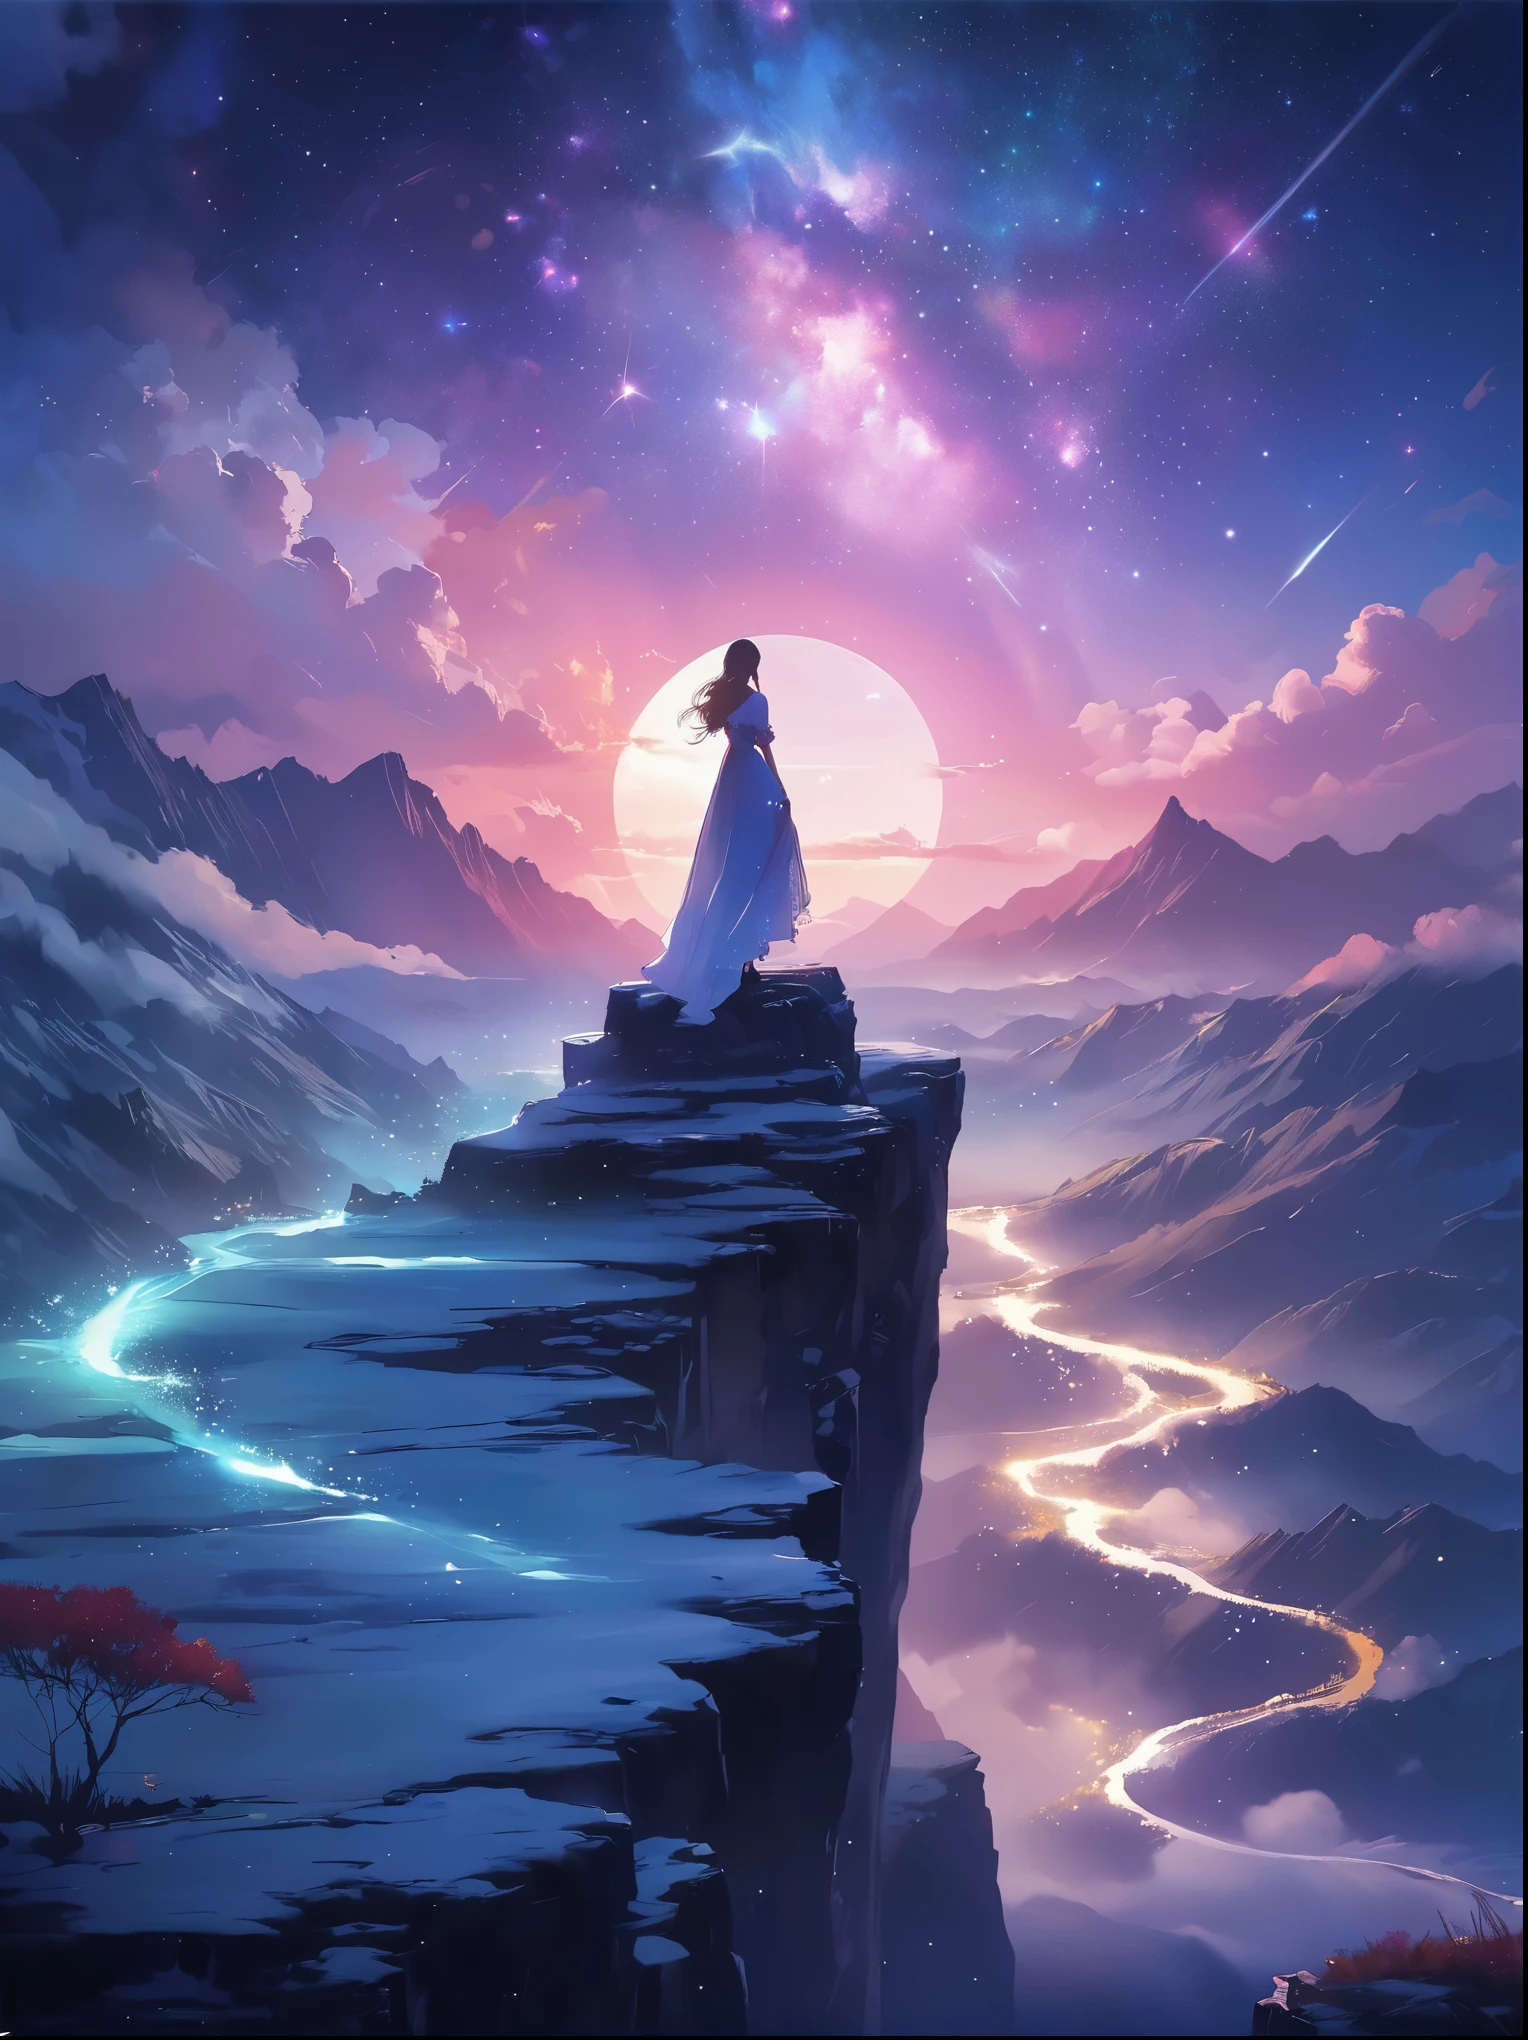 (後ろから見る)，崖の上に立つ男，夢のような中で, ぼんやりとした風景，(女の子&#39;完璧な背中)，(観客に背を向けて)，宇宙エネルギーの渦に囲まれて，ゆったりとしたローブをまとった人の後ろ姿，天流と融合する，空は深い紫と青のタペストリーです，星が点在，下の景色には、起伏のある山々がぼんやりと見える，この光景は平和で崇高だ，宇宙の雄大な自然を捉える，物思いにふける人物が畏敬の念を抱いて立っている